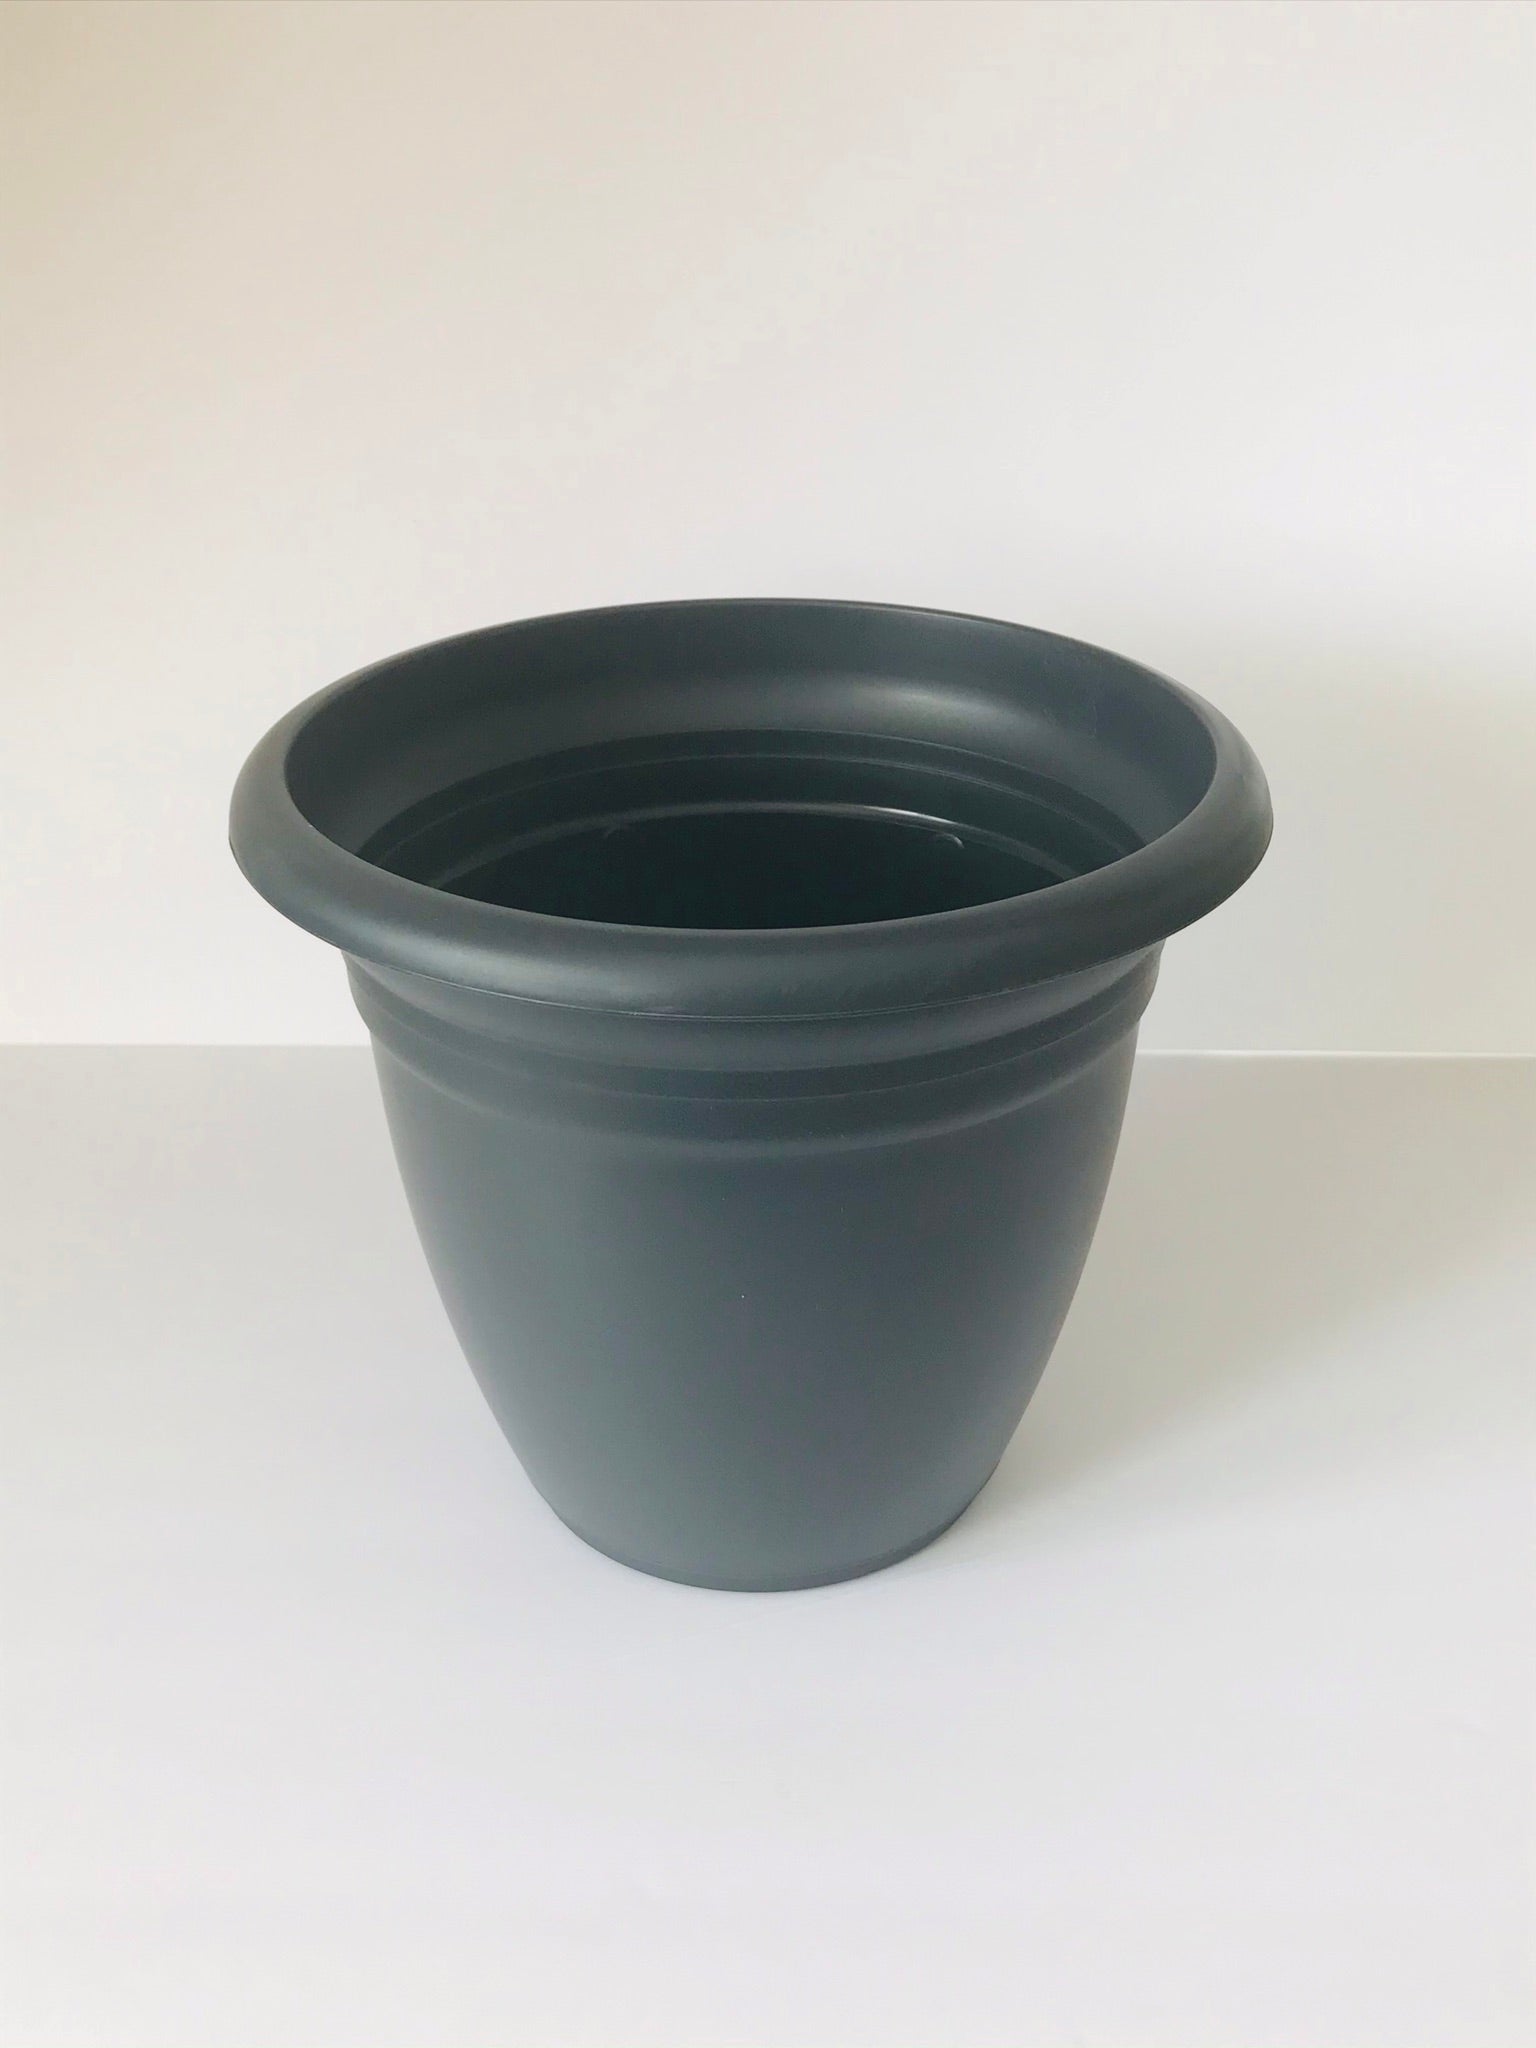 8" Charcoal Gray Pot & Saucer